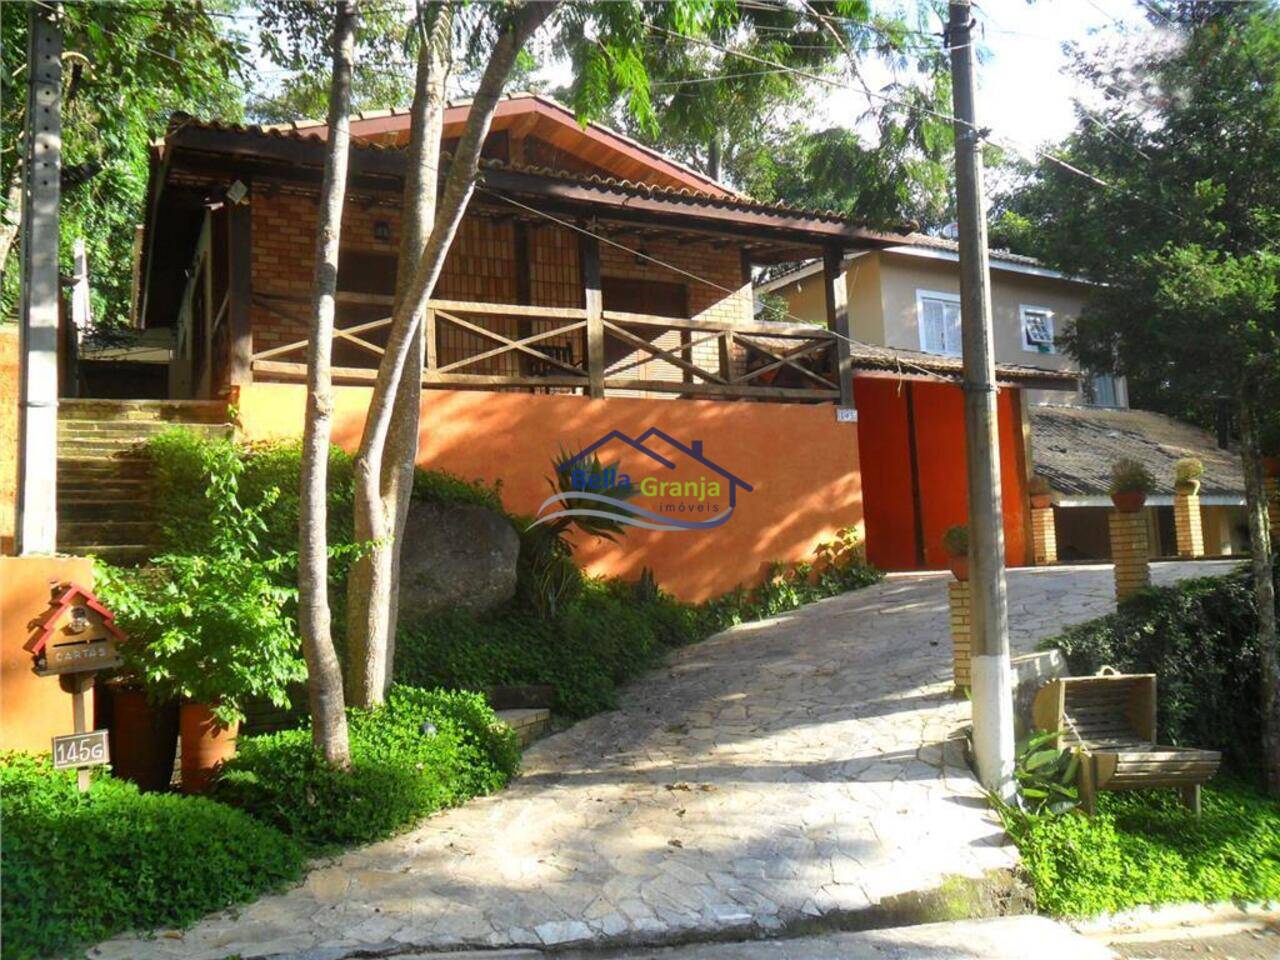 Casa Granja Viana, Itapevi - SP